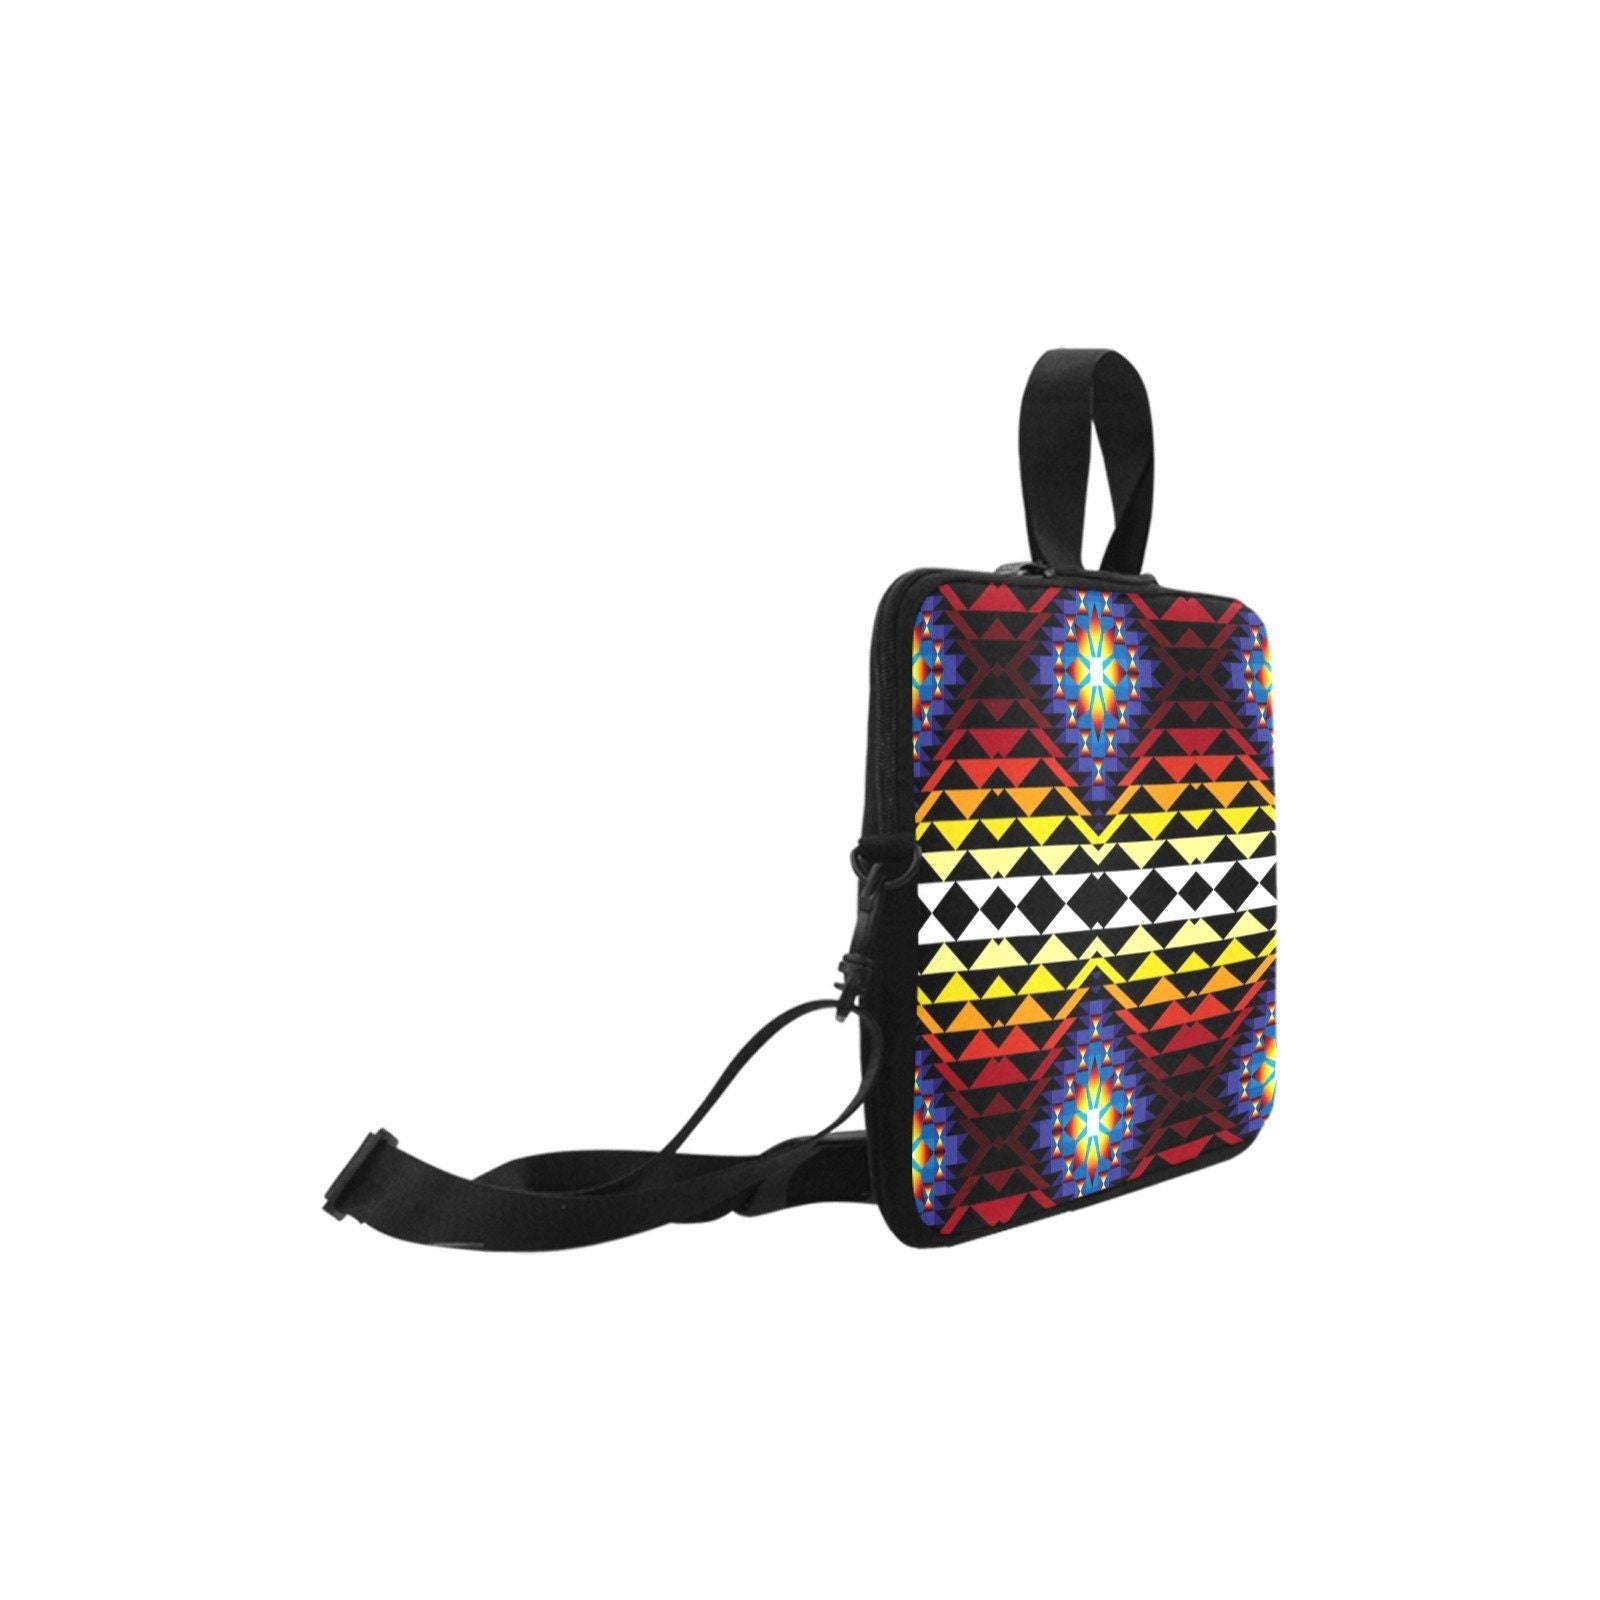 Sunset Blanket Laptop Handbags 10" bag e-joyer 